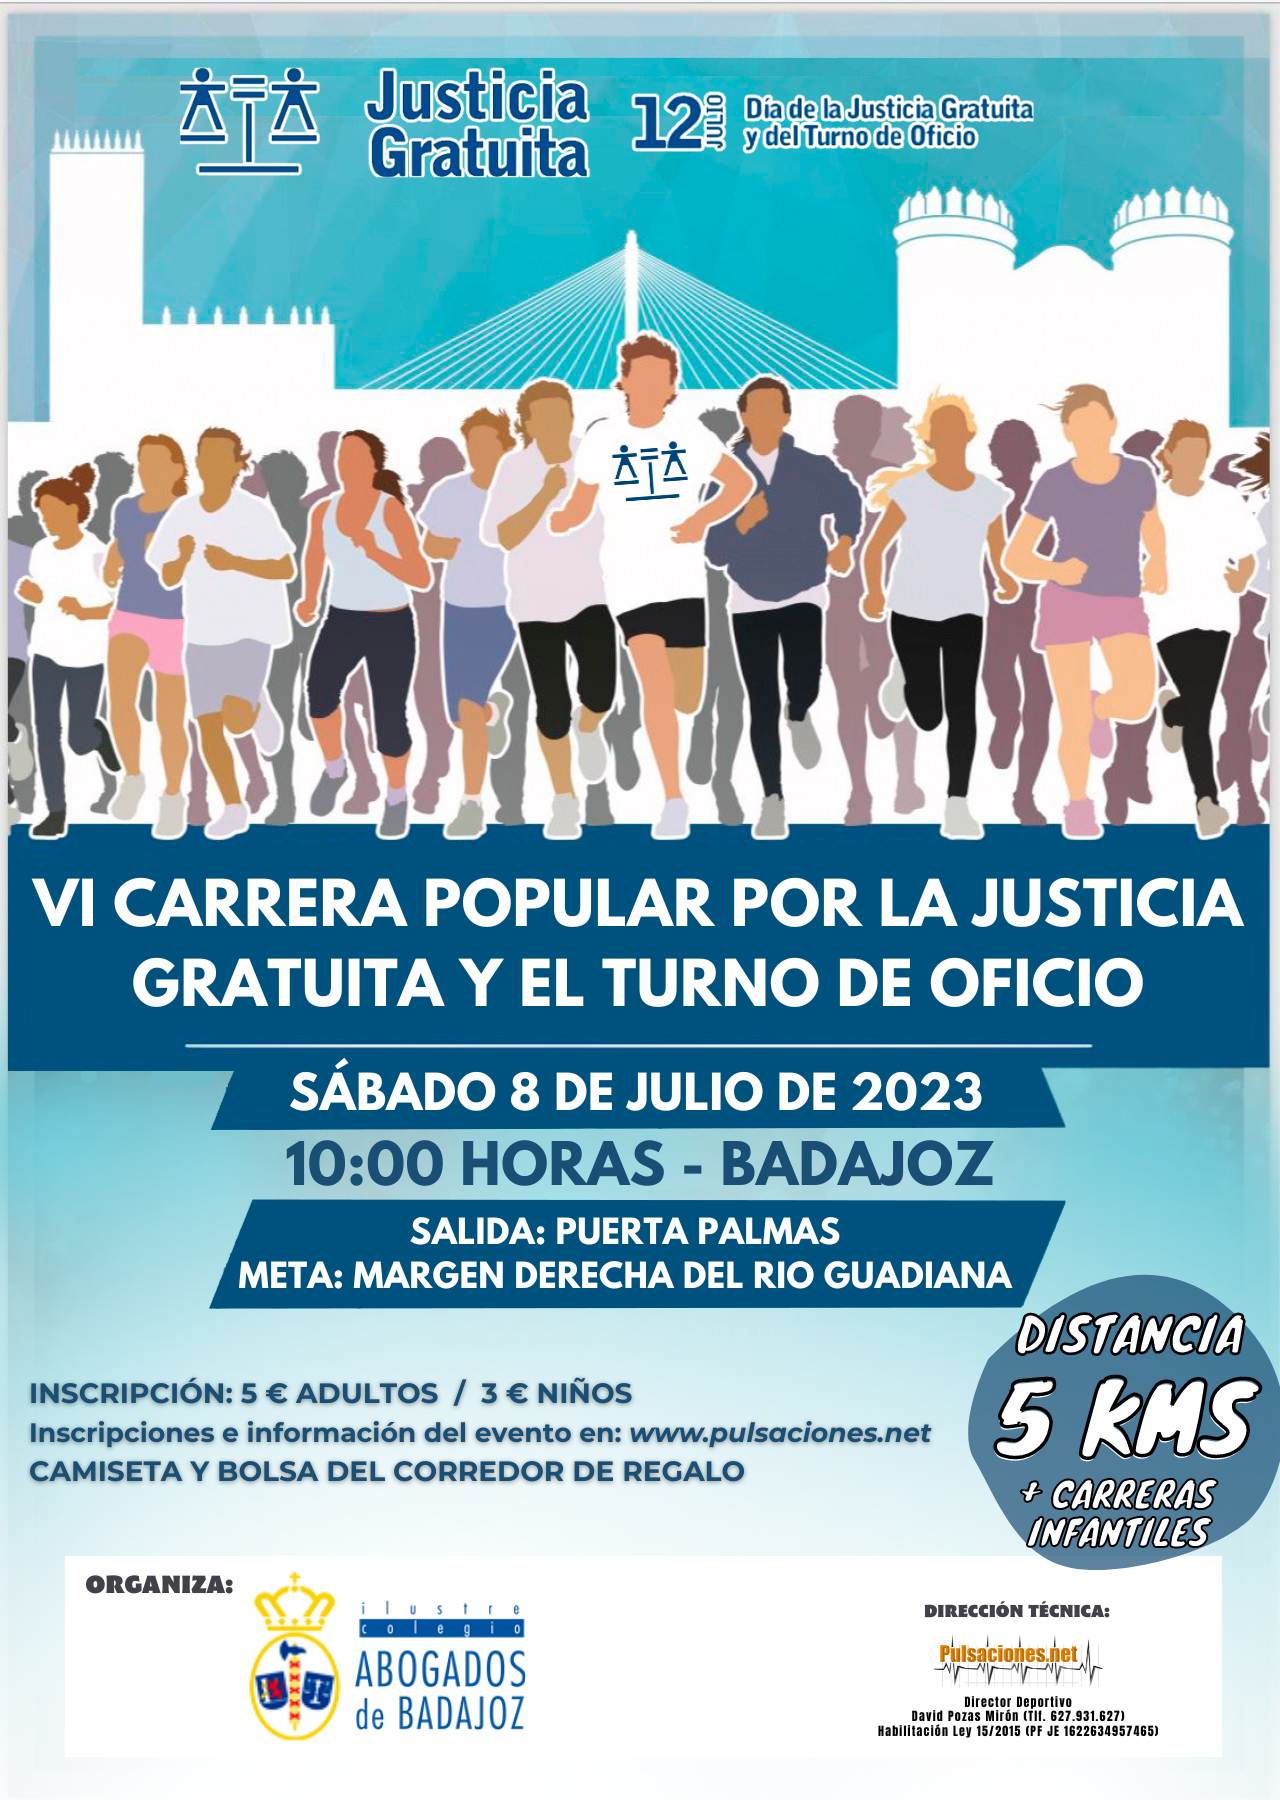 VI CARRERA POPULAR POR LA JUSTICIA GRATUITA Y EL TURNO DE OFICIO - BADAJOZ 2023 - Inscríbete